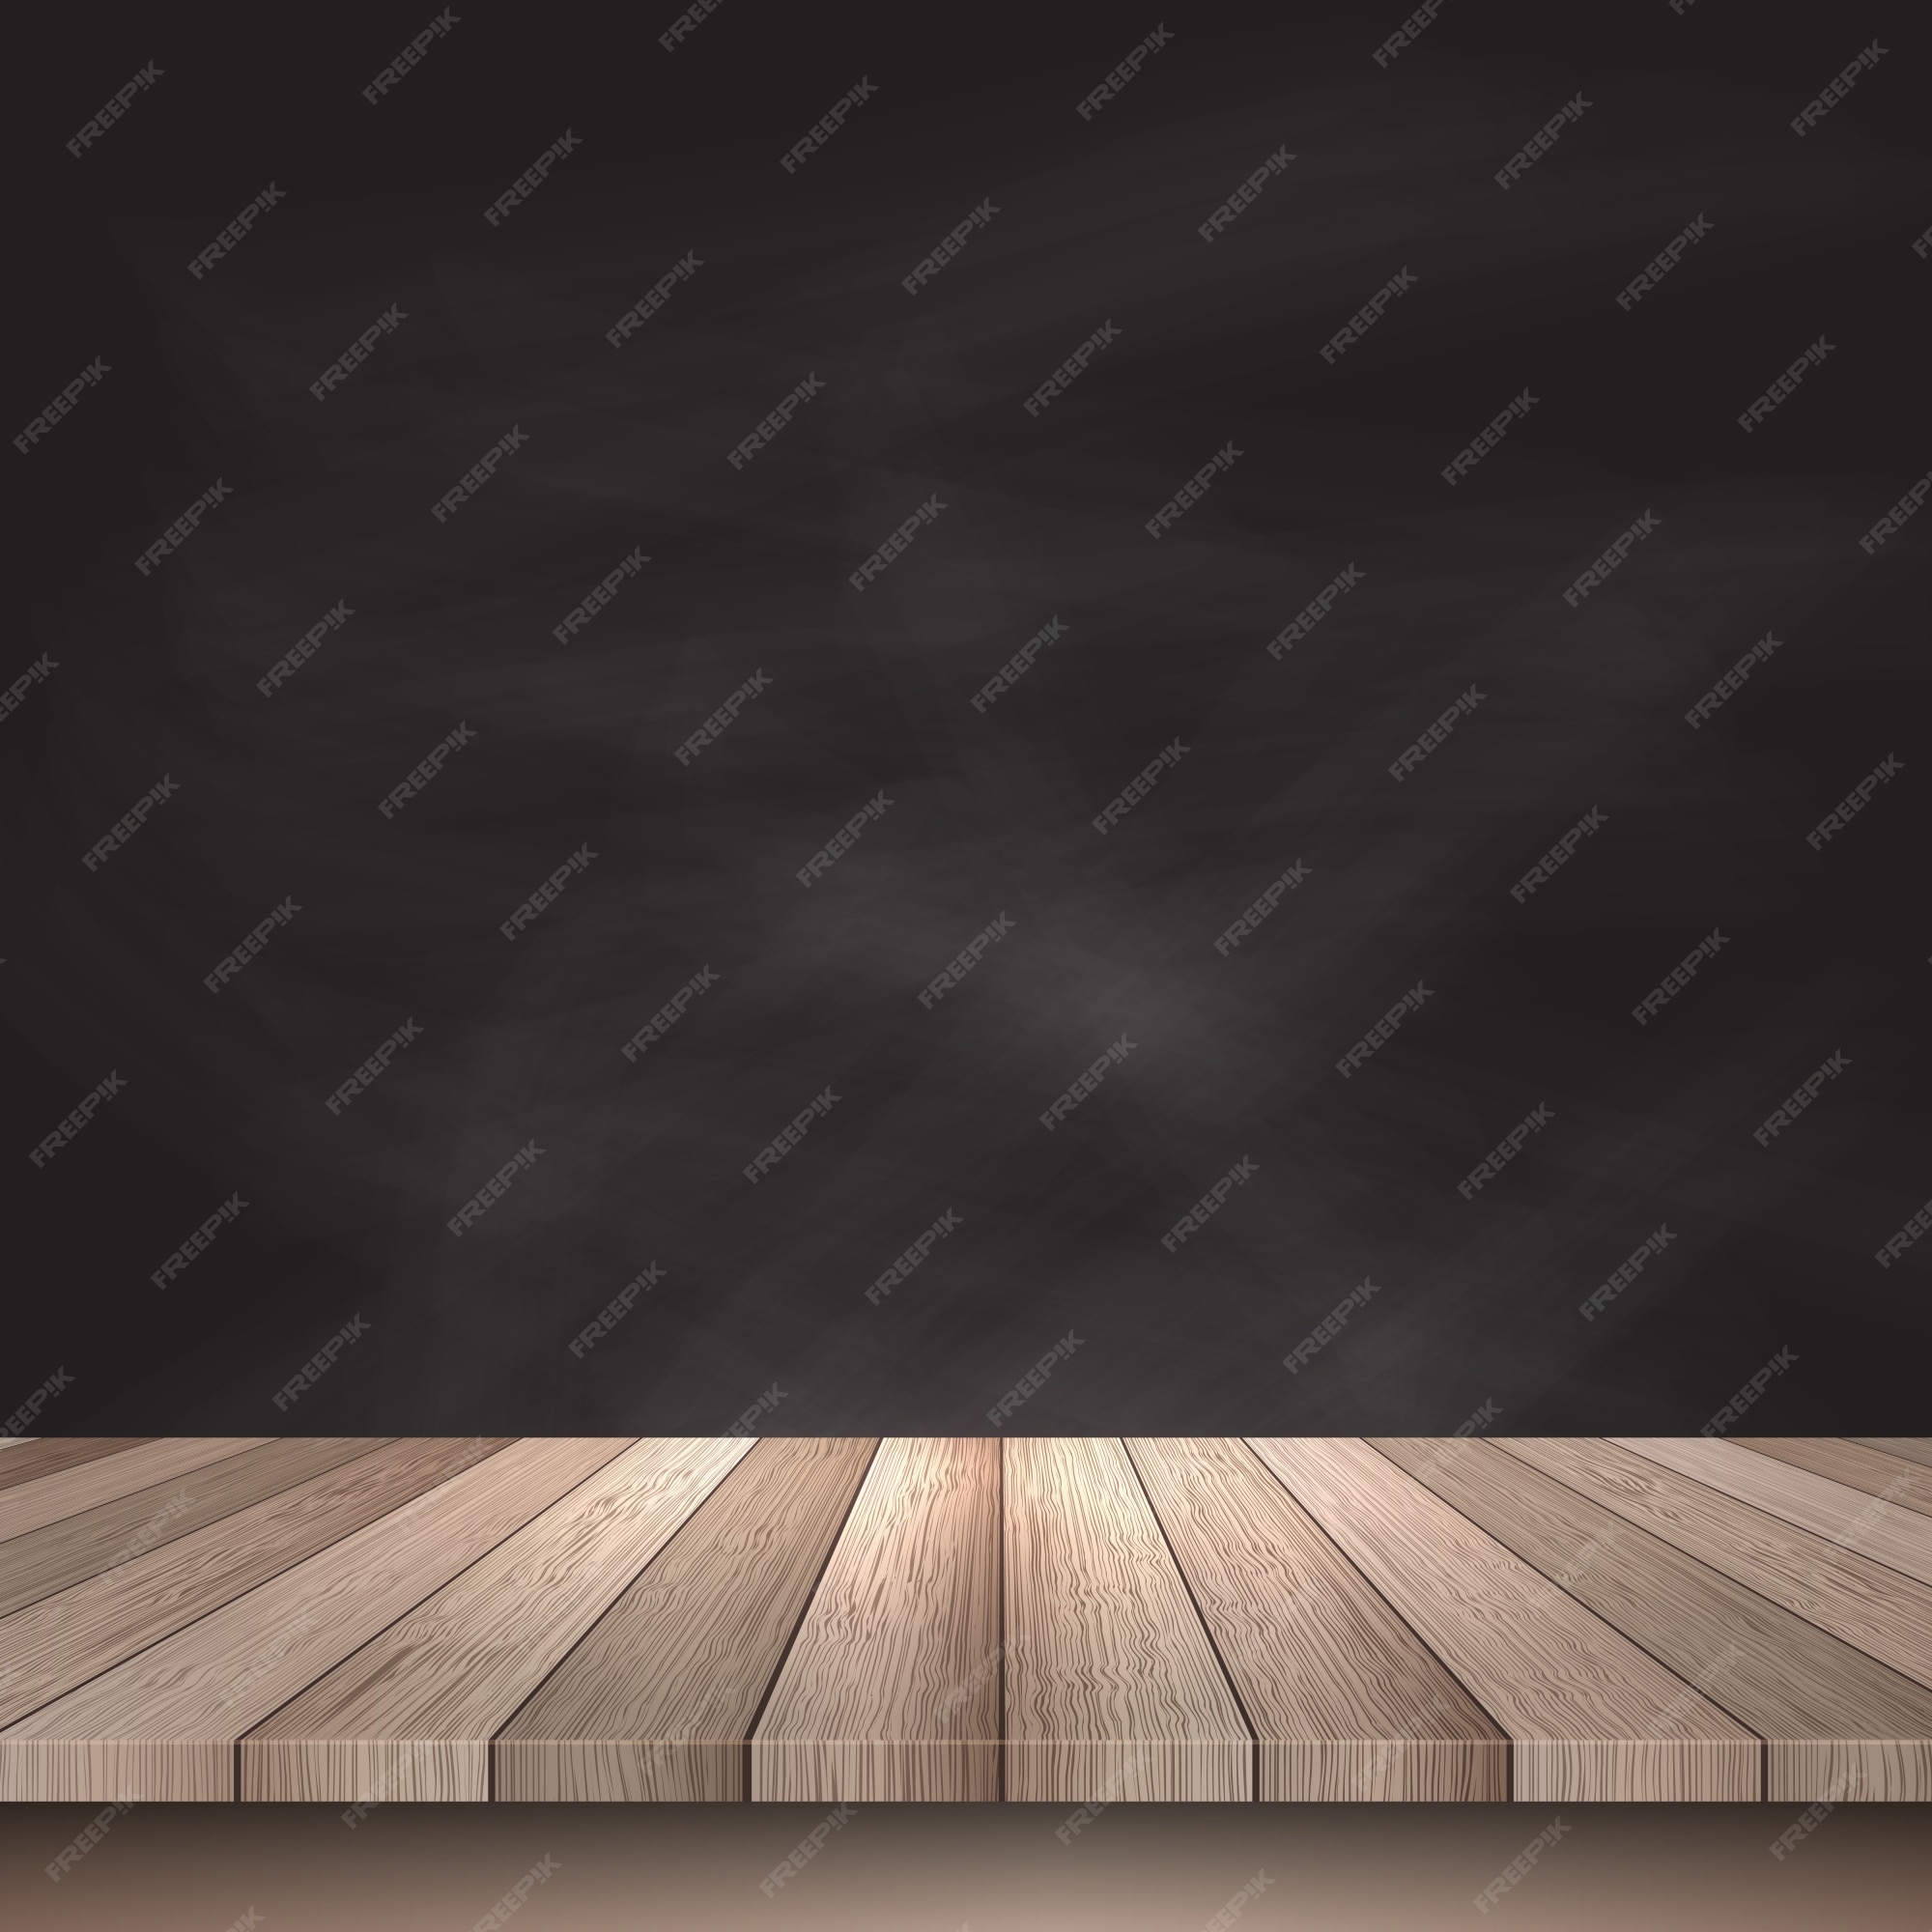 Free Vector | Wooden table on a black background - Bàn Gỗ Đen Bạn muốn một hình ảnh đơn giản nhưng tinh tế và vô cùng đập vào mắt? Hãy tải ngay hình ảnh bàn gỗ đen này! Sự kết hợp giữa một chiếc bàn đơn giản và màu nền đen đậm sẽ mang đến cho bạn một không gian cực kỳ nổi bật và độc đáo. Hãy tải ngay để sưu tầm!